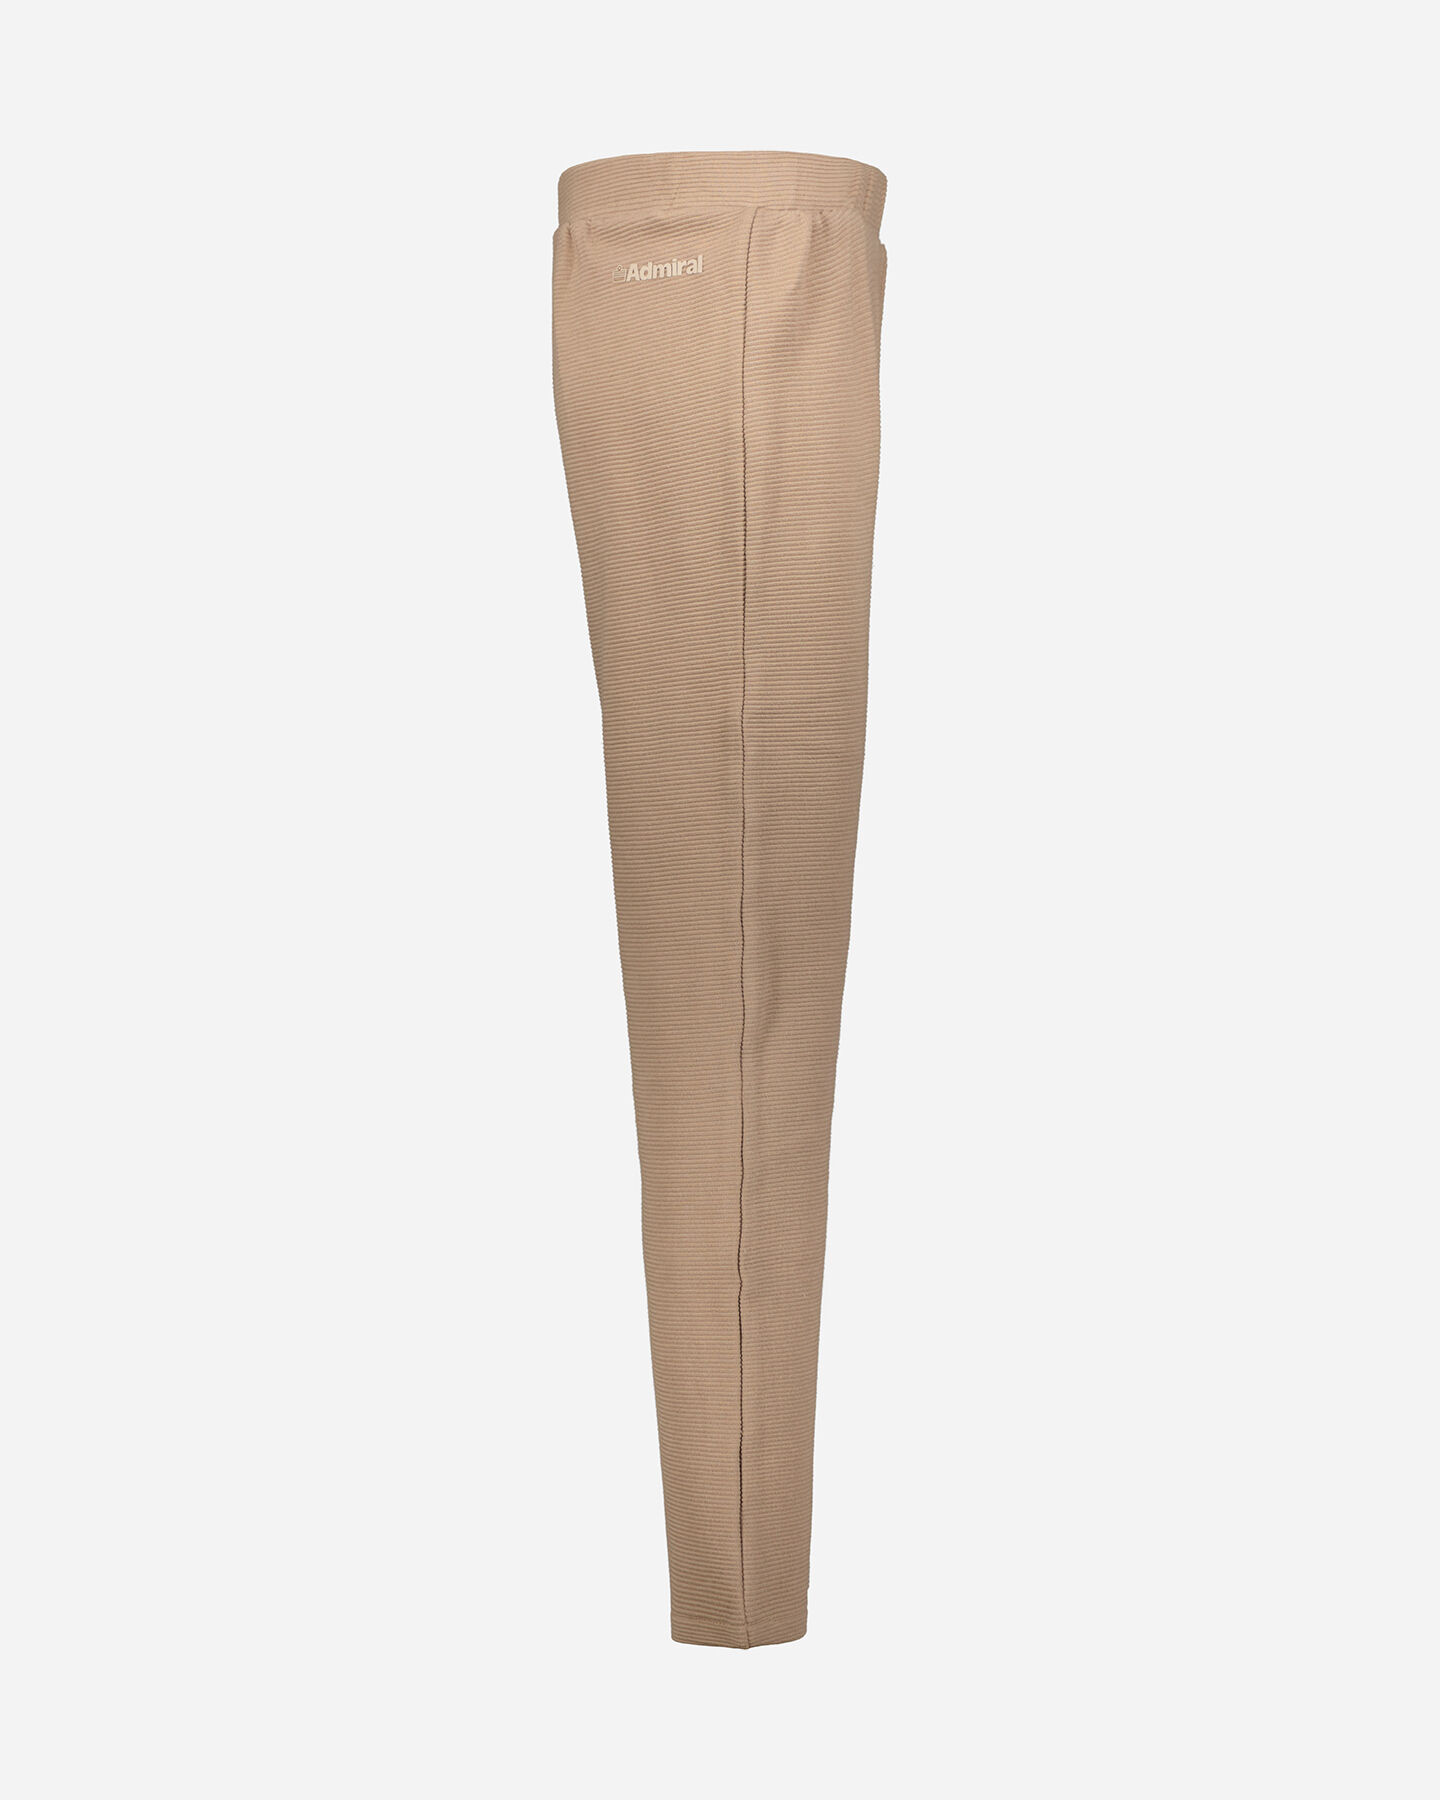  Pantalone ADMIRAL CLASSIC W S4119471|168|L scatto 1